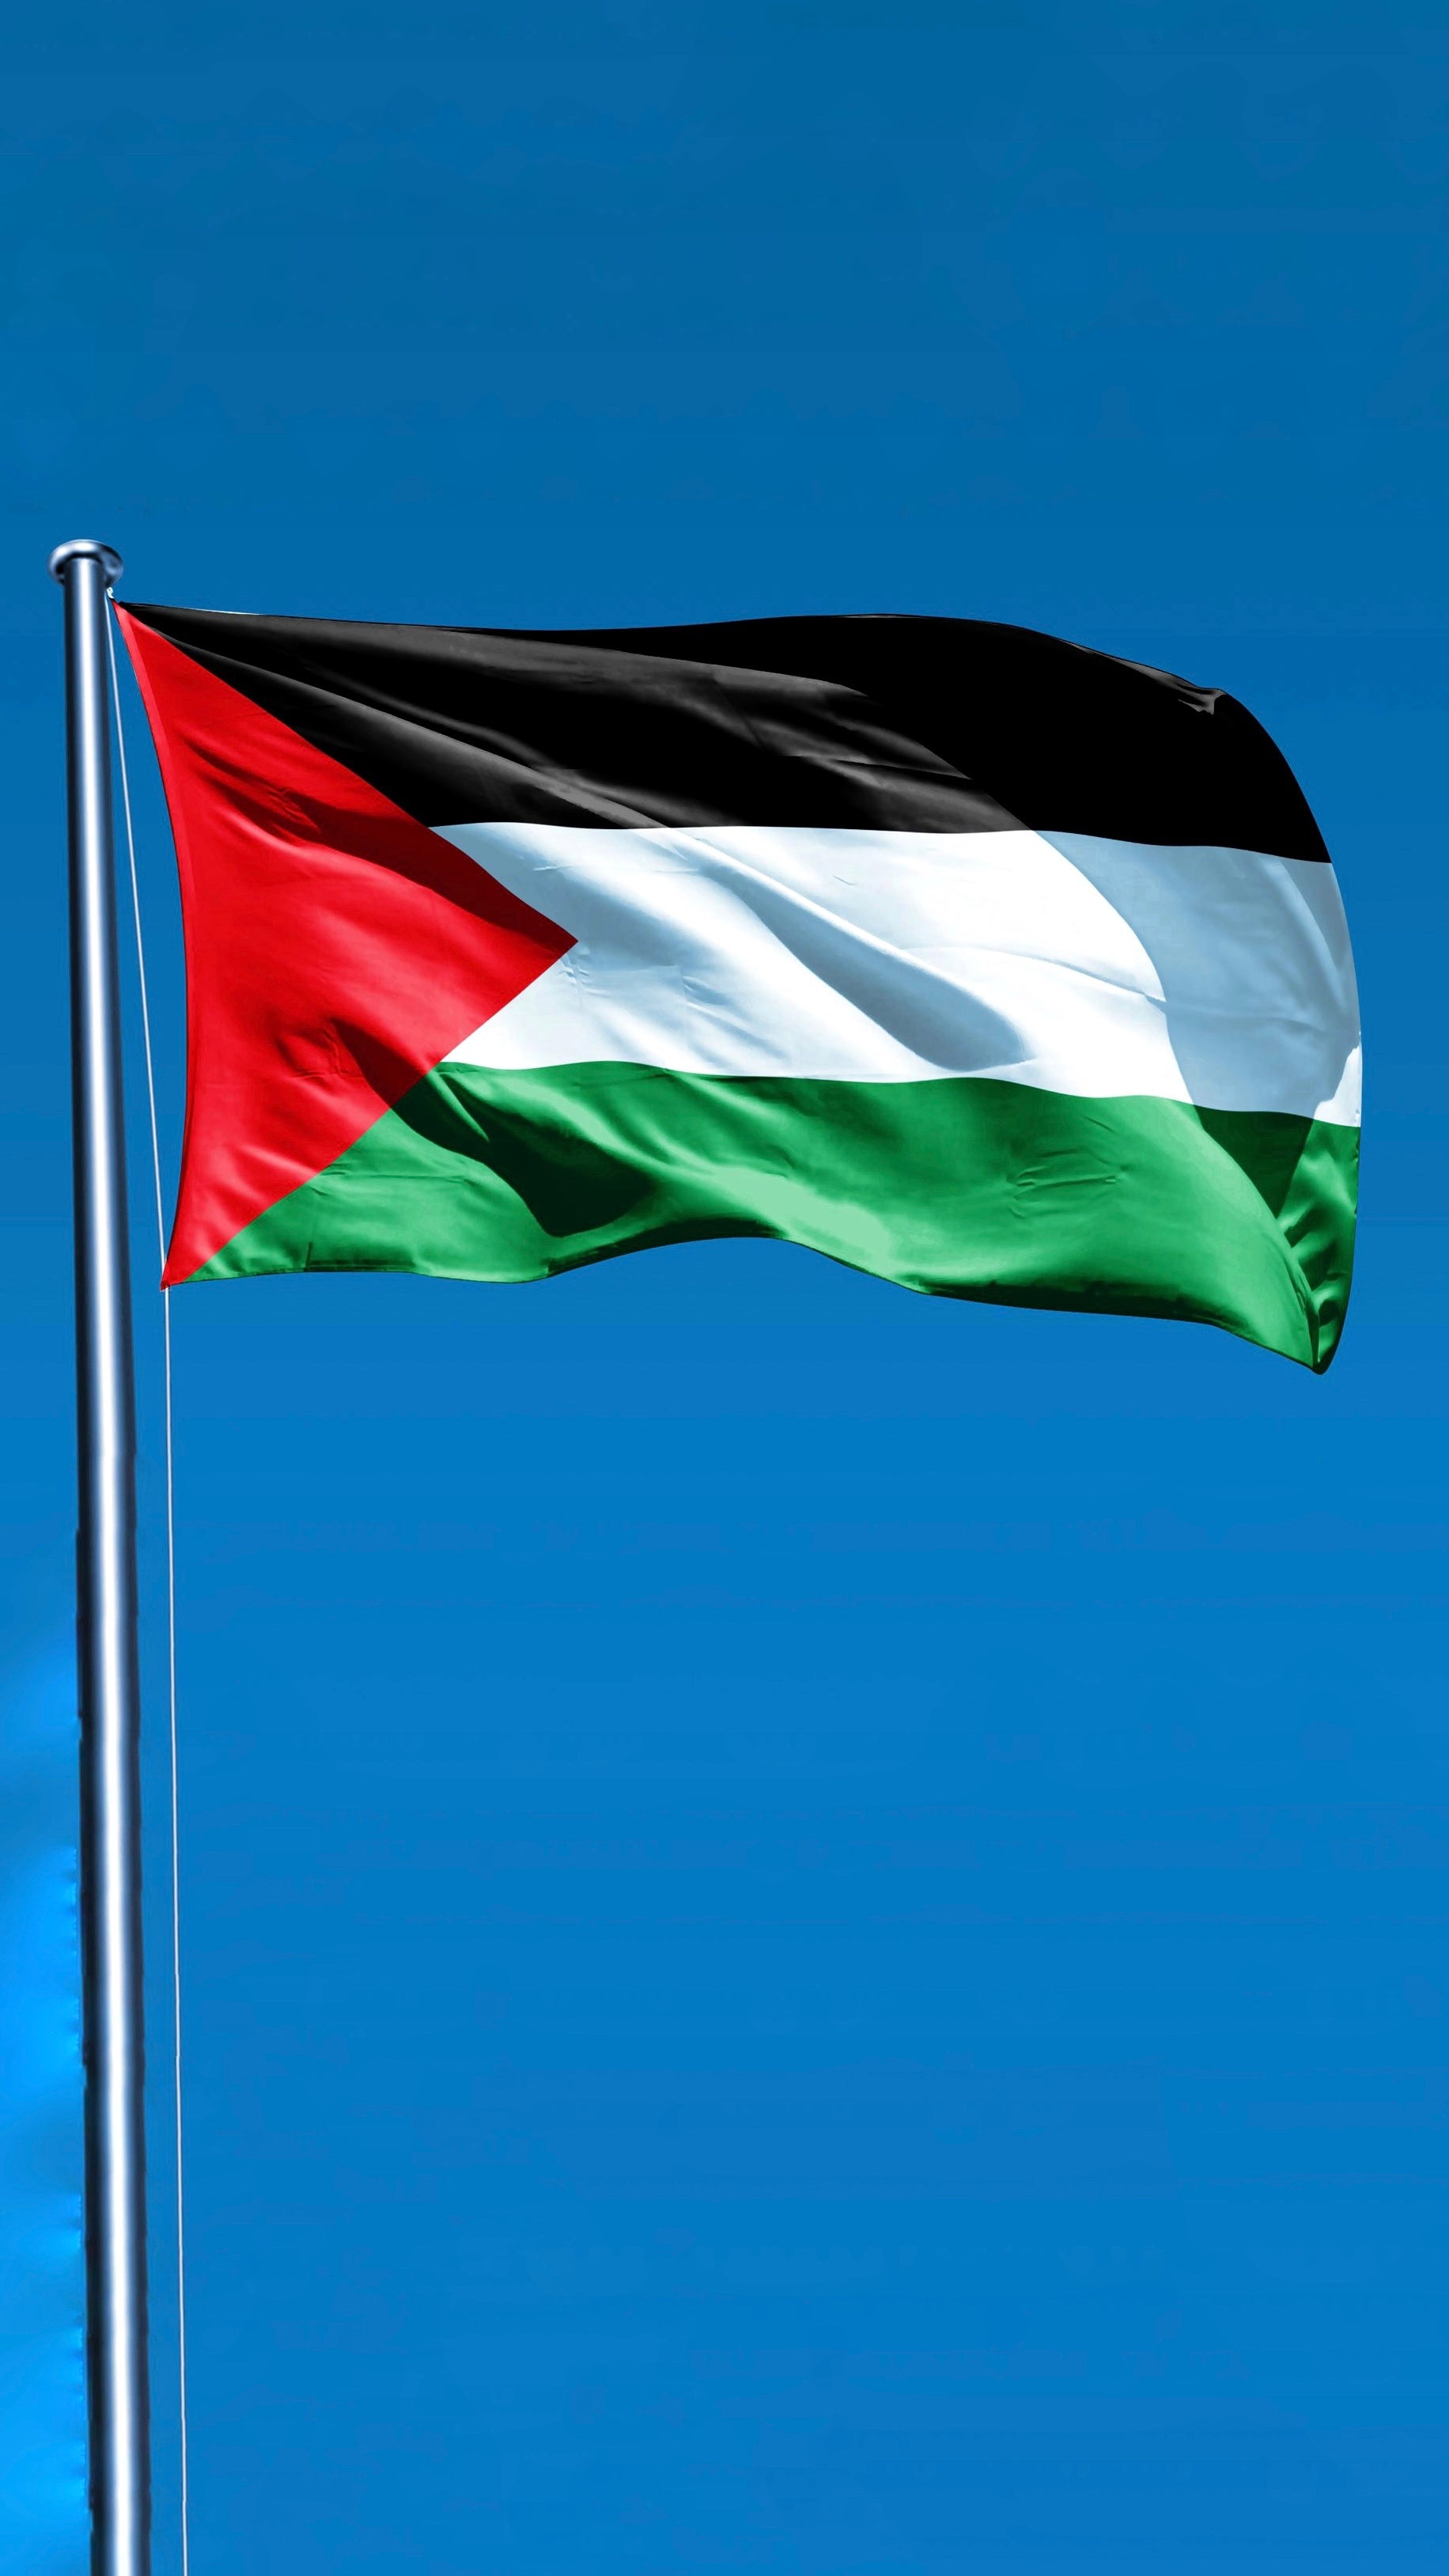 Bandiera, palestina, gaza, bianco verde nero rosso, bandiere grandi